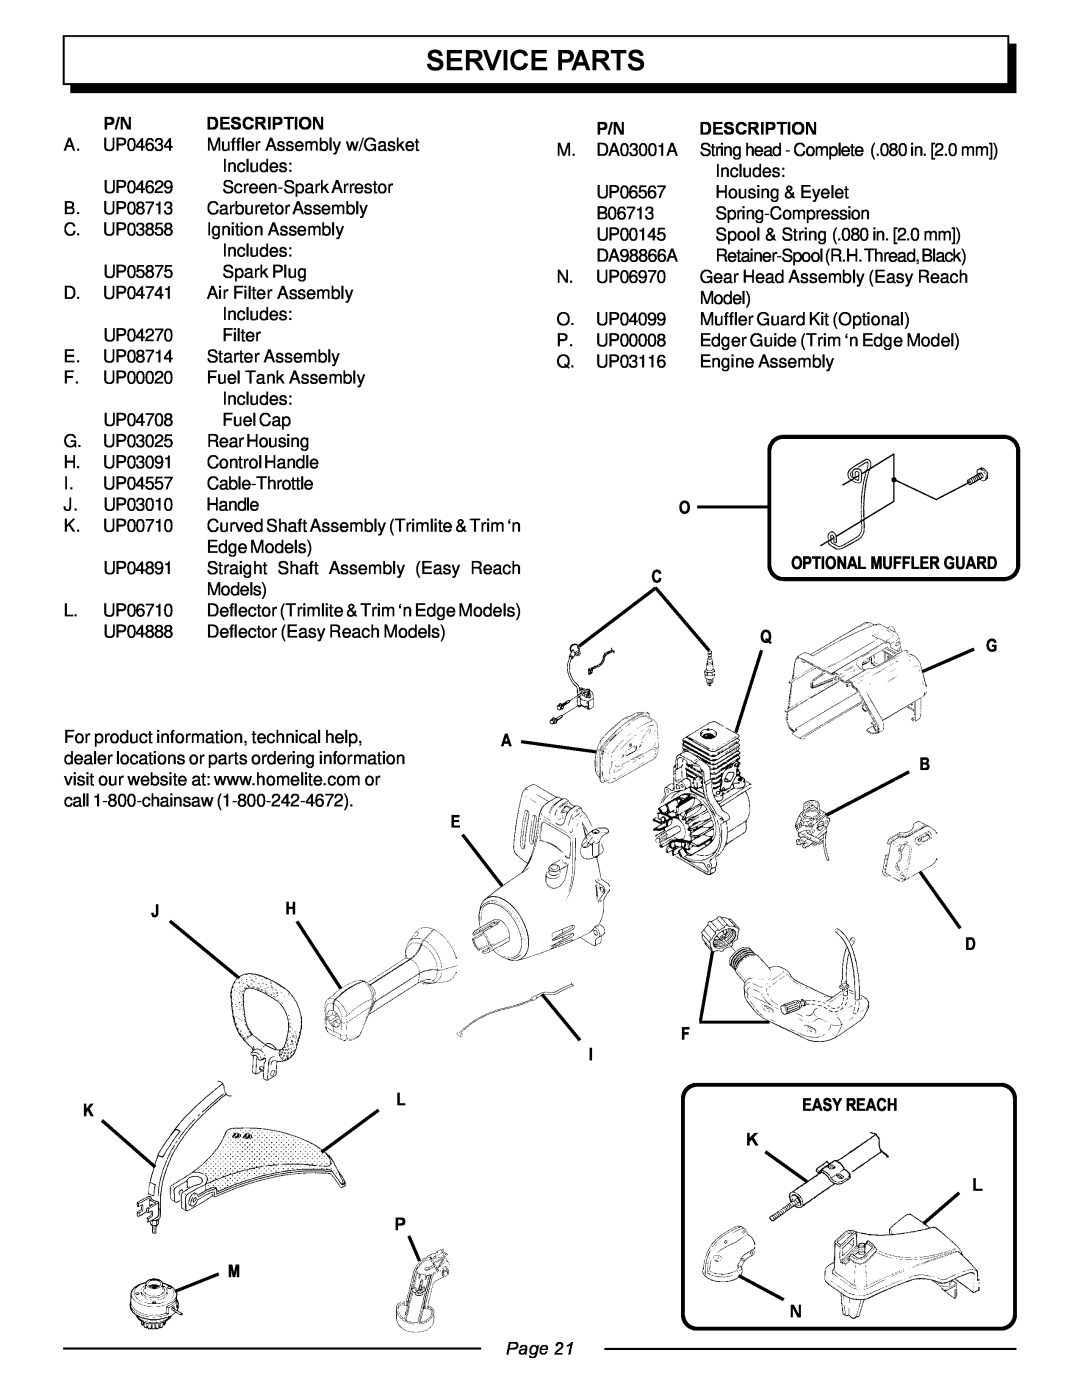 Homelite UT20763 manual Service Parts, P/N Description, K L P, Page 